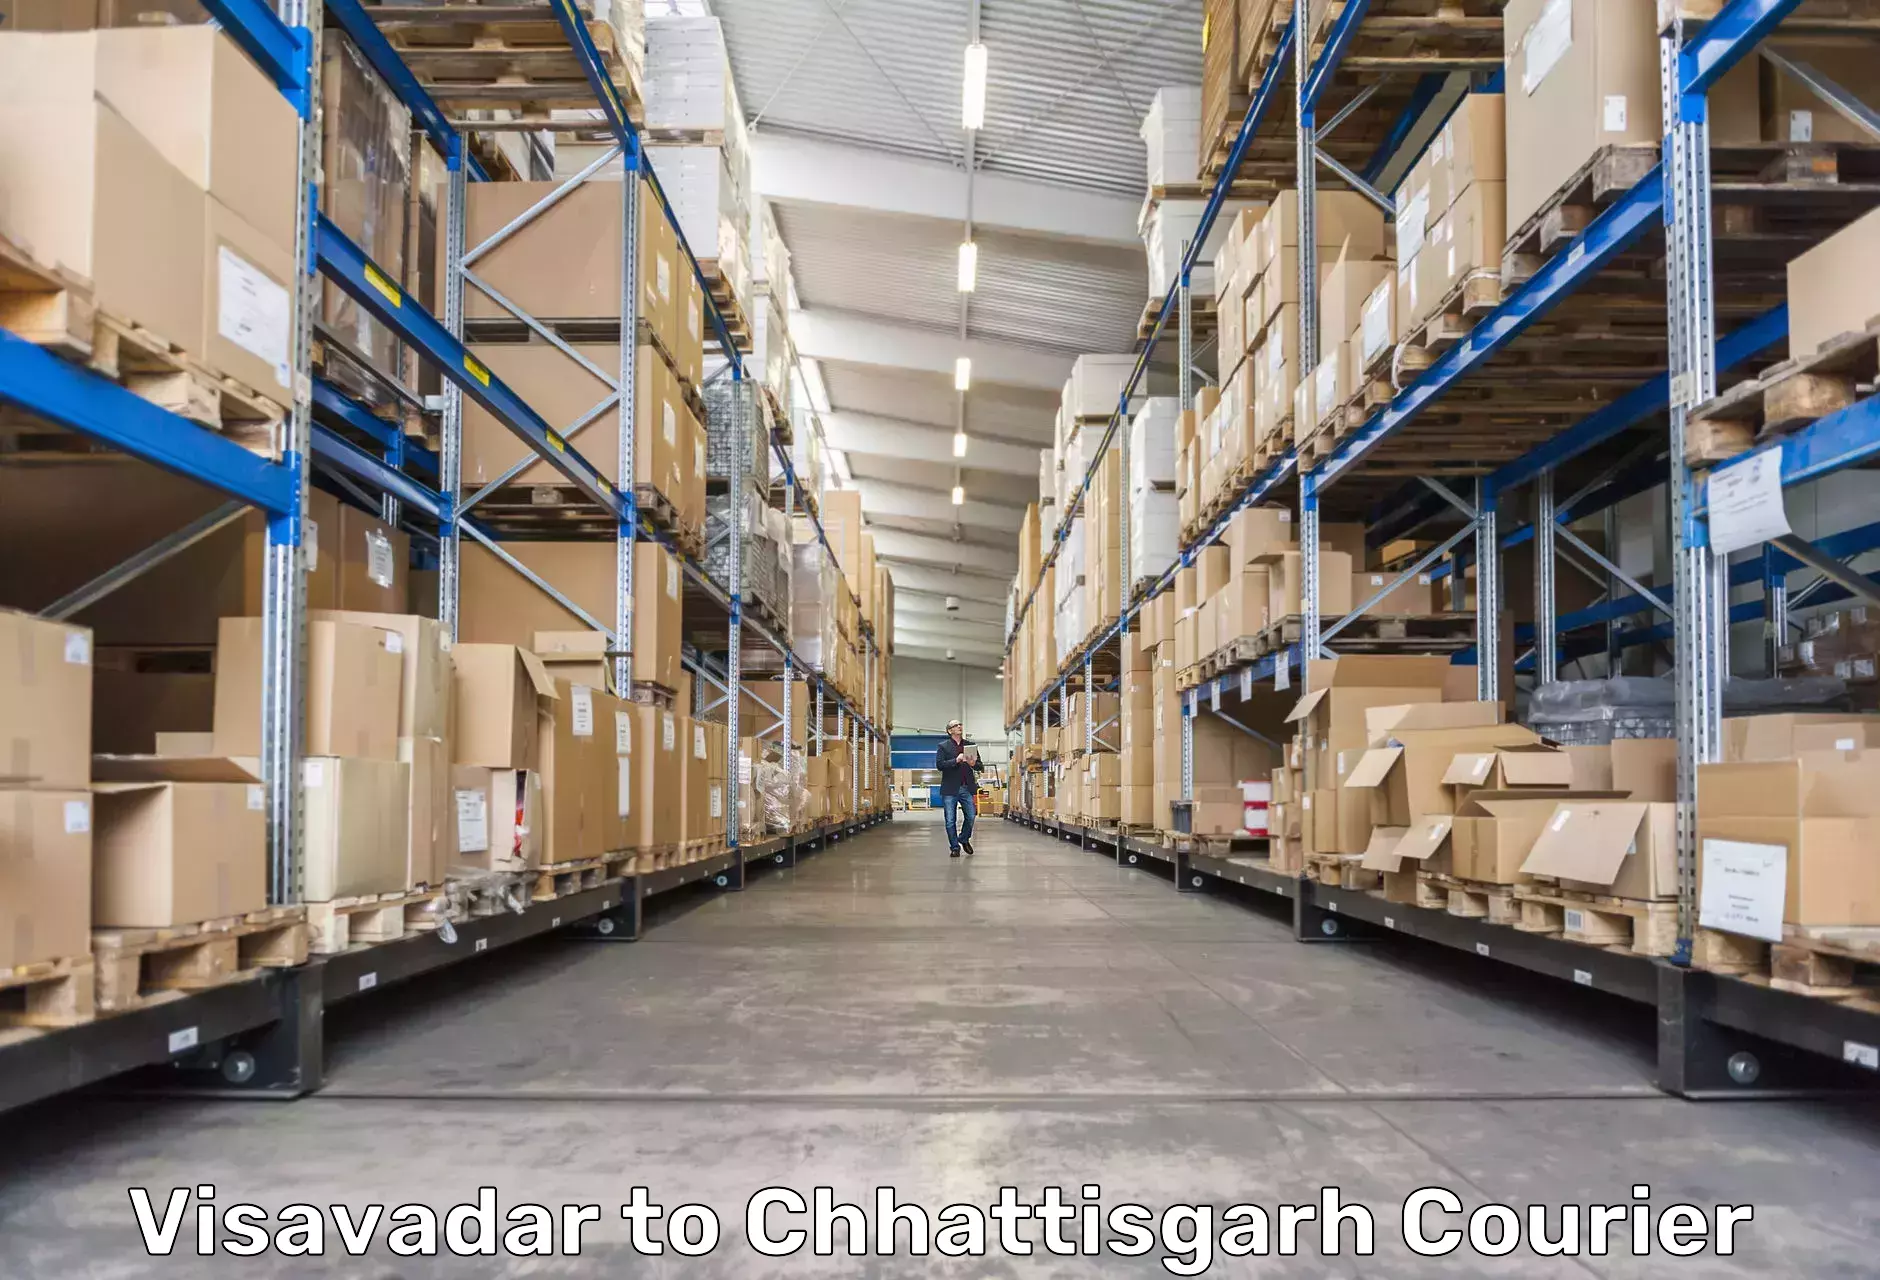 Logistics service provider Visavadar to Chhattisgarh